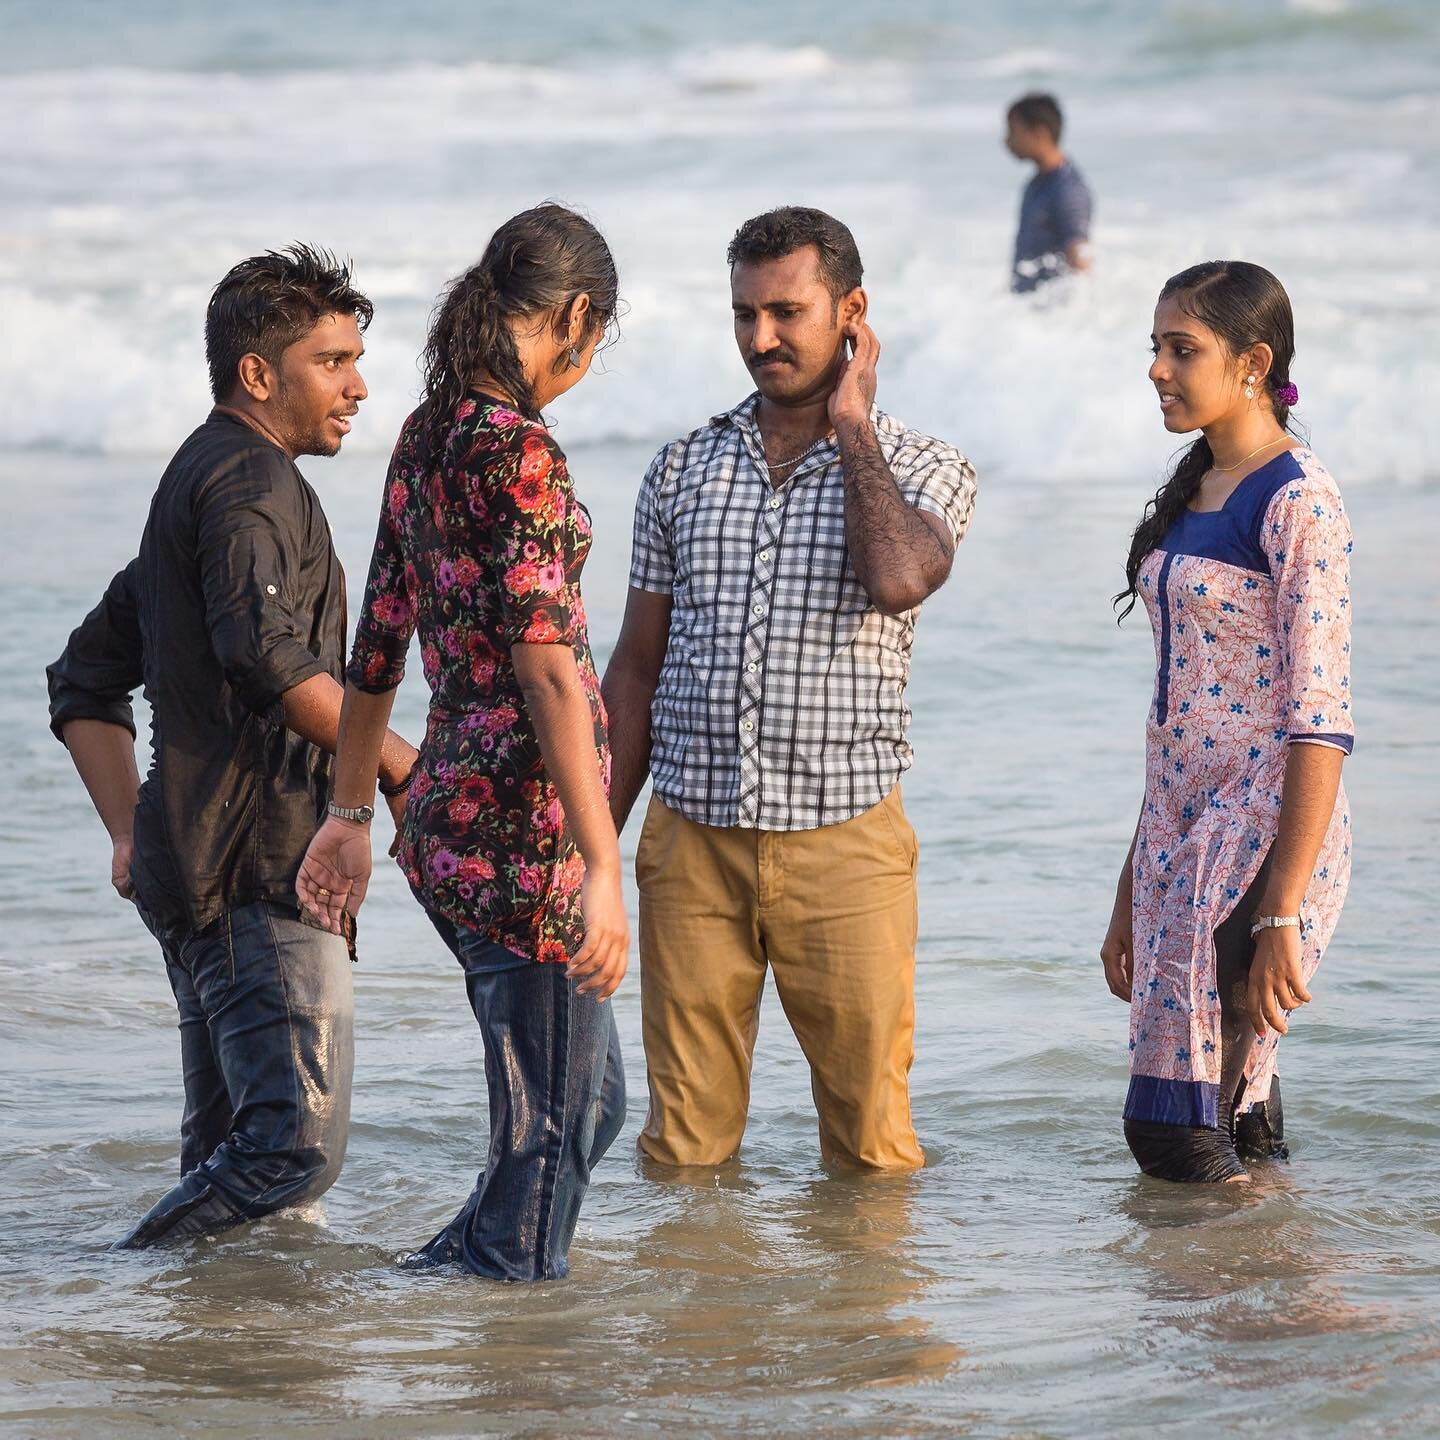 Tal como os avanzamos completamos la serie sobre la playa de Kovalam de Kerala en la India con una foto que refleja la indumentaria que se suelen utilizar los indios para ir a la playa y ba&ntilde;arse. Bastante distinta a la de los occidentales &iqu